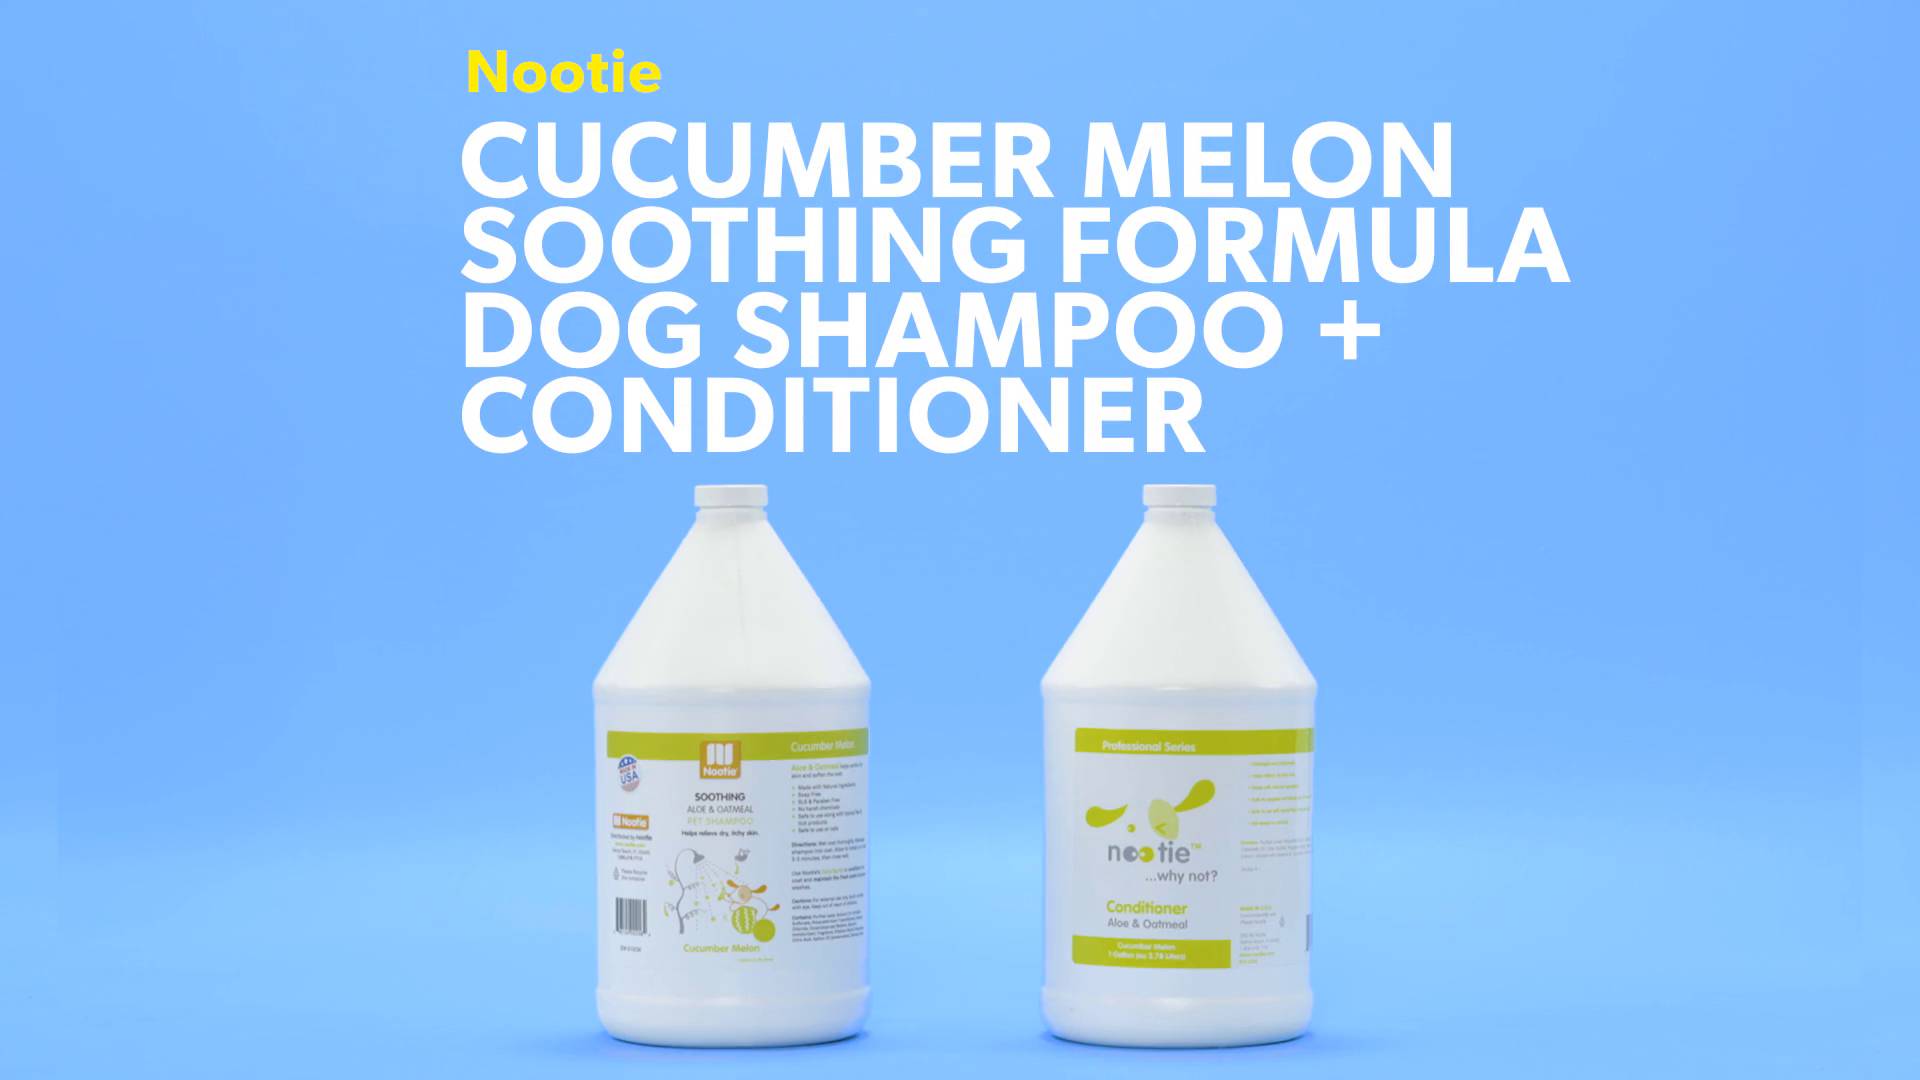 nootie cucumber melon shampoo